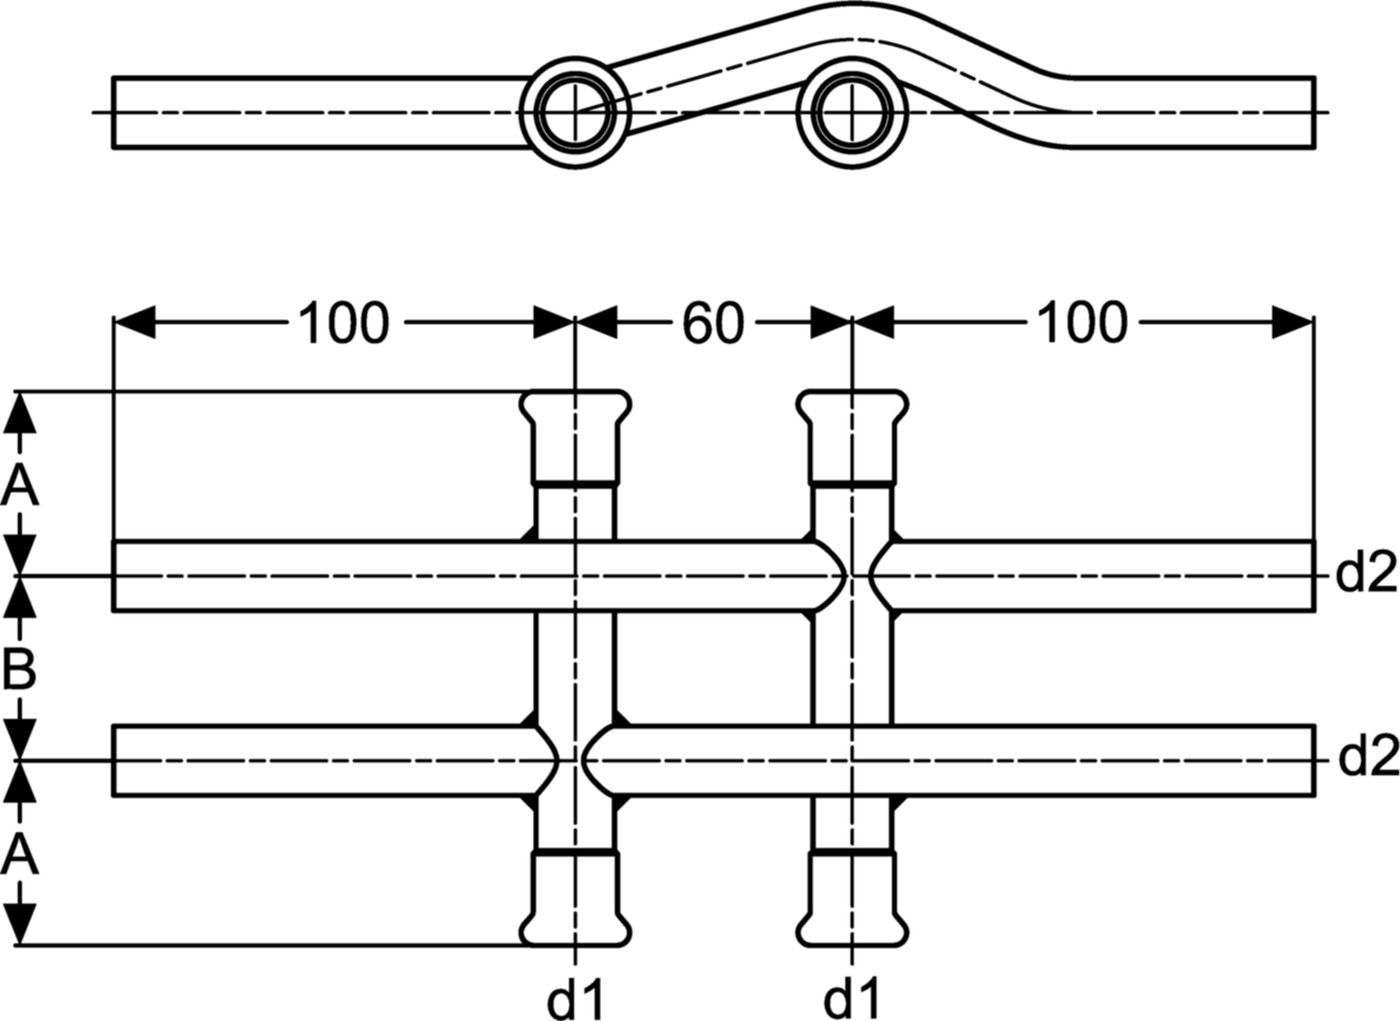 Kreuzungs-T doppelt 18-15 mm C90CD Achsabstand 60/40 mm - Eurotubi Press-Formstücke Heizung